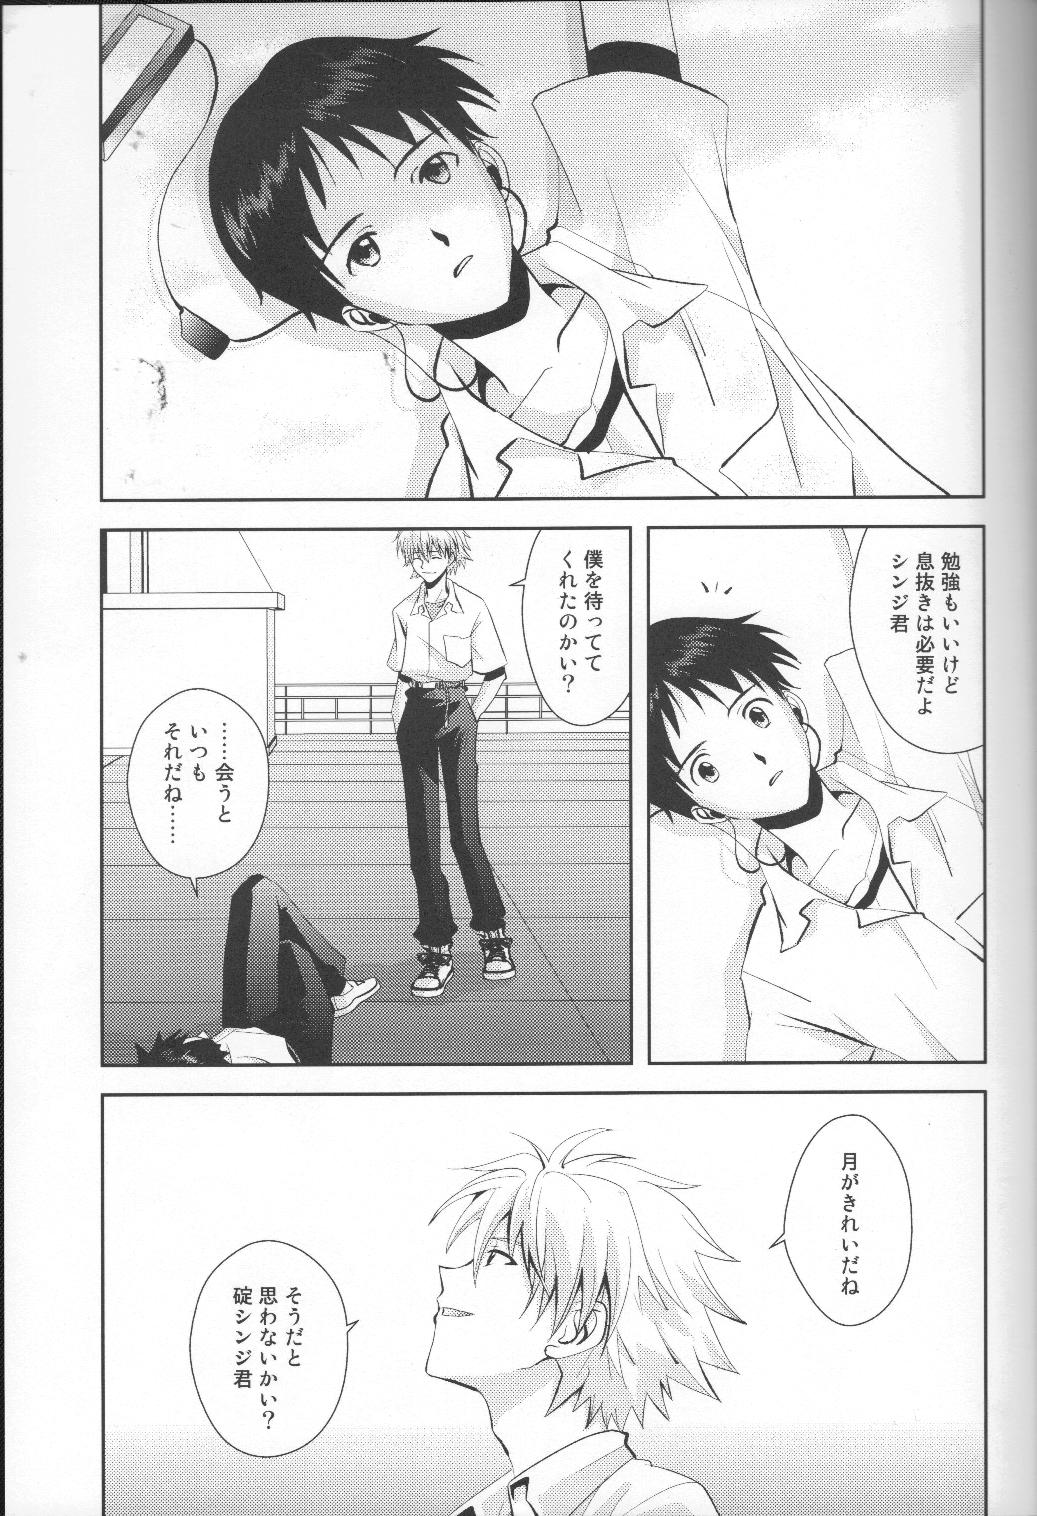 Smoking Tsuki ga Kirei da ne - Neon genesis evangelion Audition - Page 6